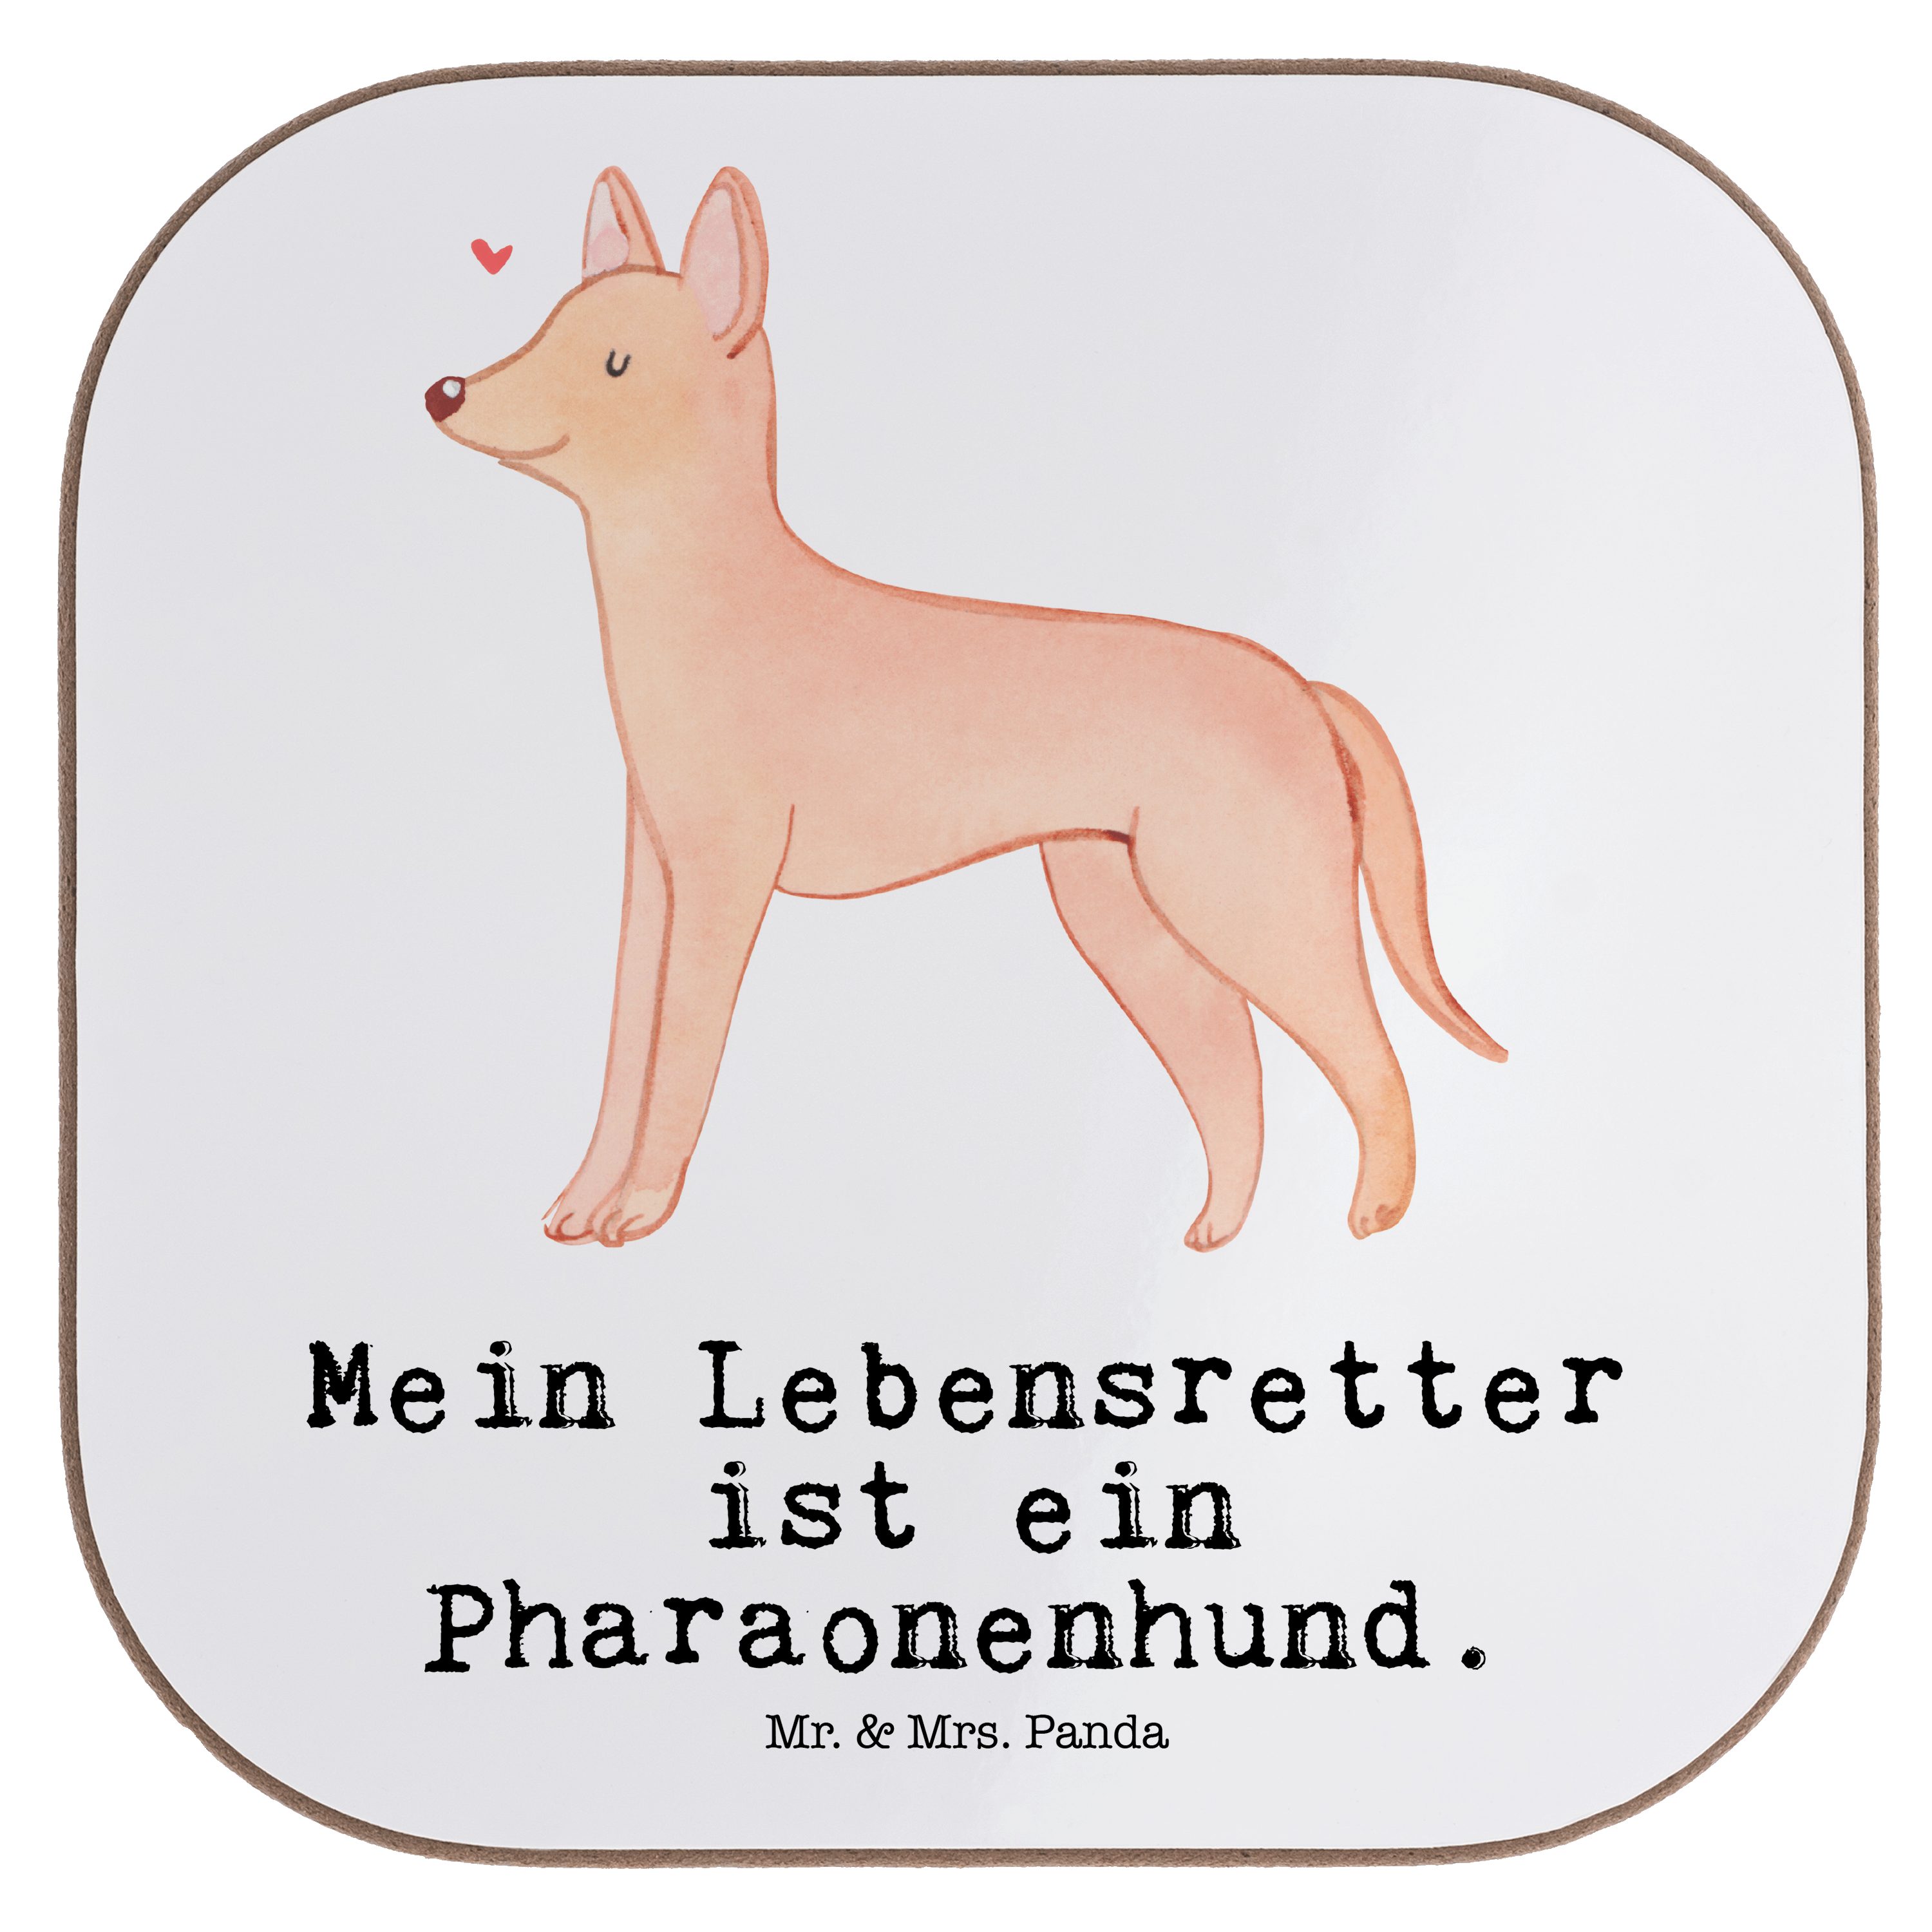 Mr. & Mrs. Panda Getränkeuntersetzer Pharaonenhund Lebensretter - Weiß - Geschenk, Untersetzer Gläser, Pha, 1-tlg.